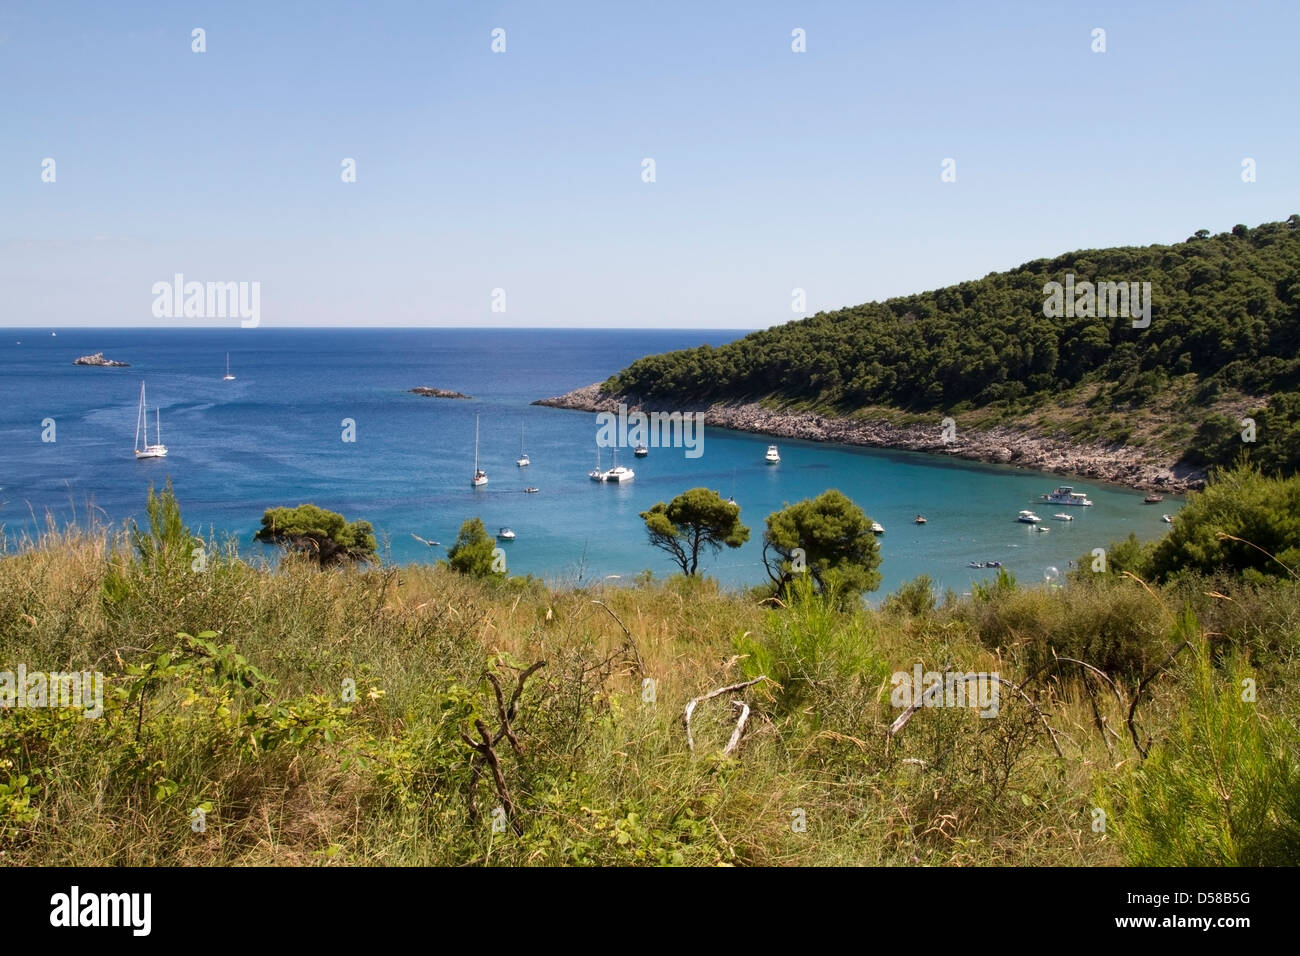 Sunj bay sull'isola di Lopud, Croazia Foto Stock